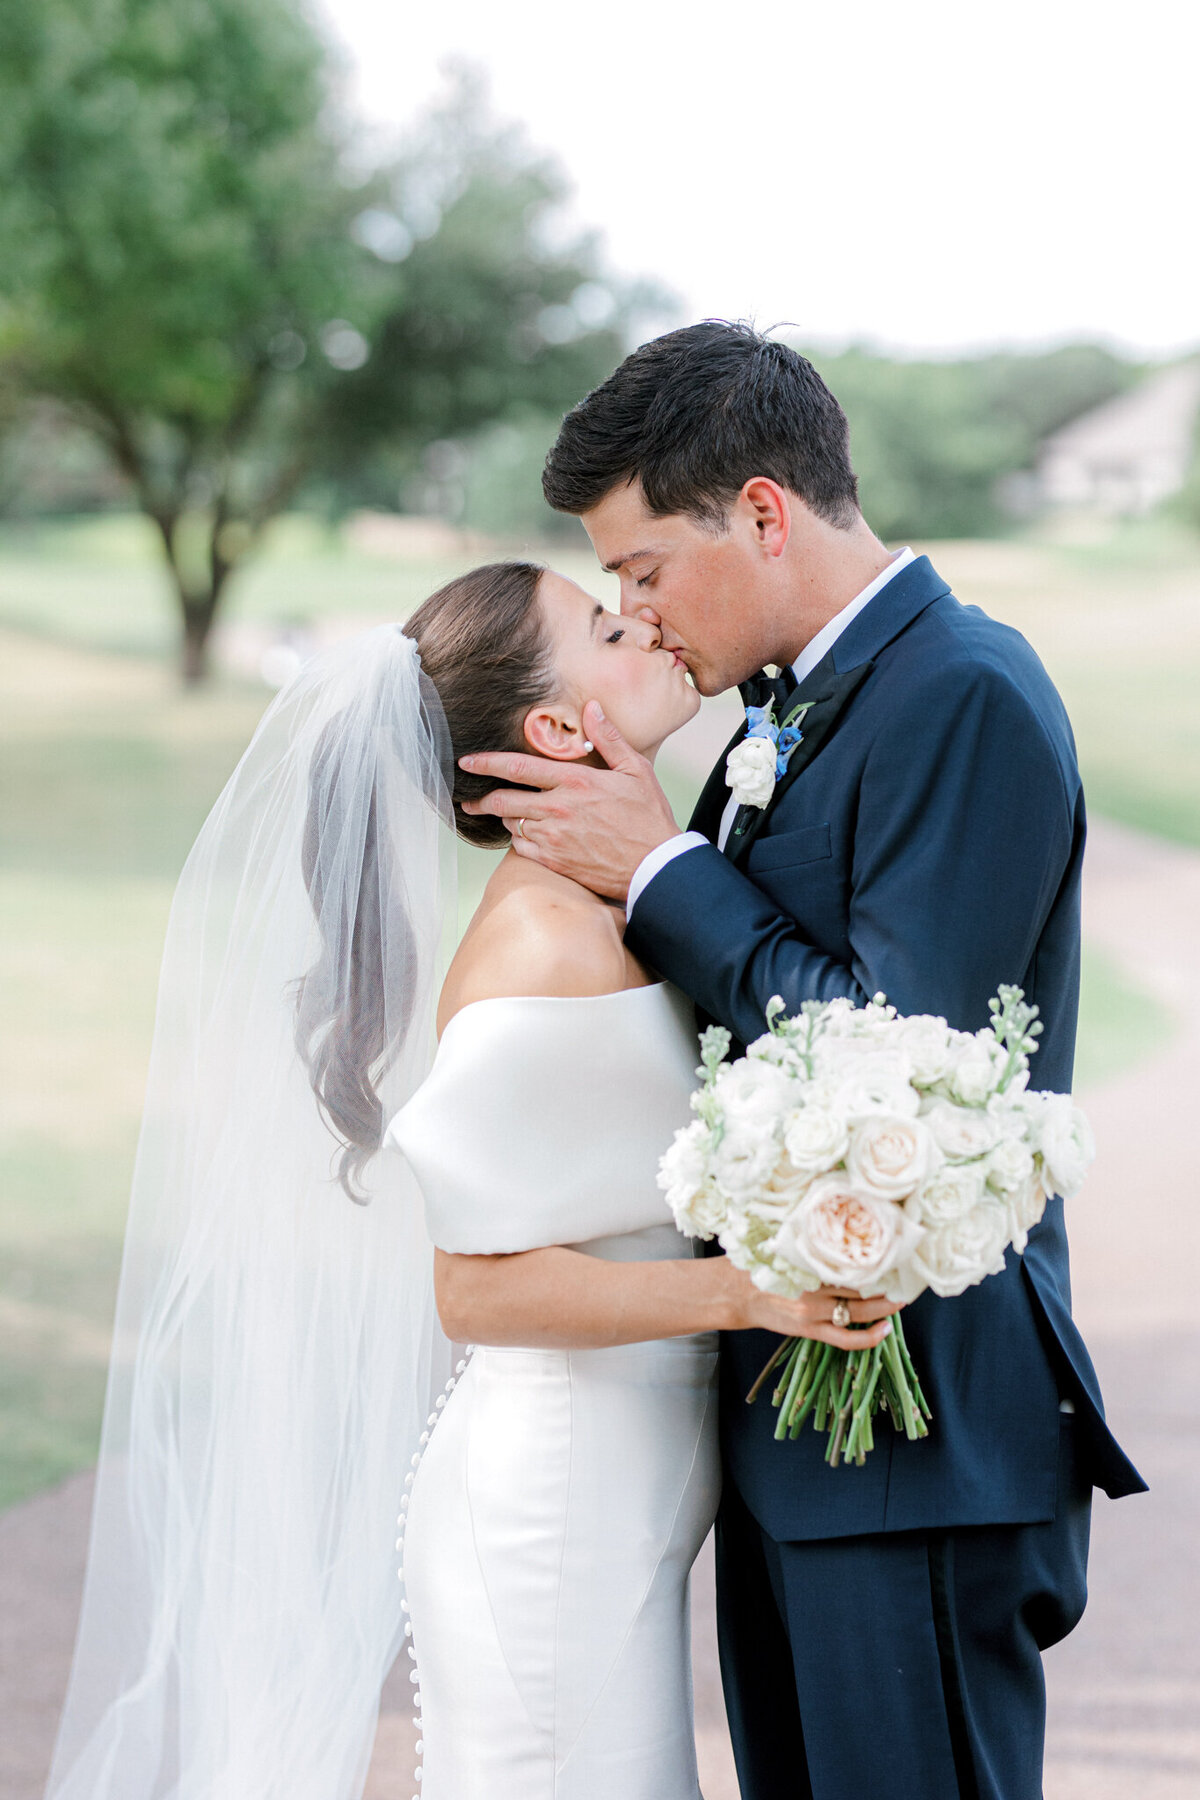 Annie & Logan's Wedding | Dallas Wedding Photographer | Sami Kathryn Photography-2